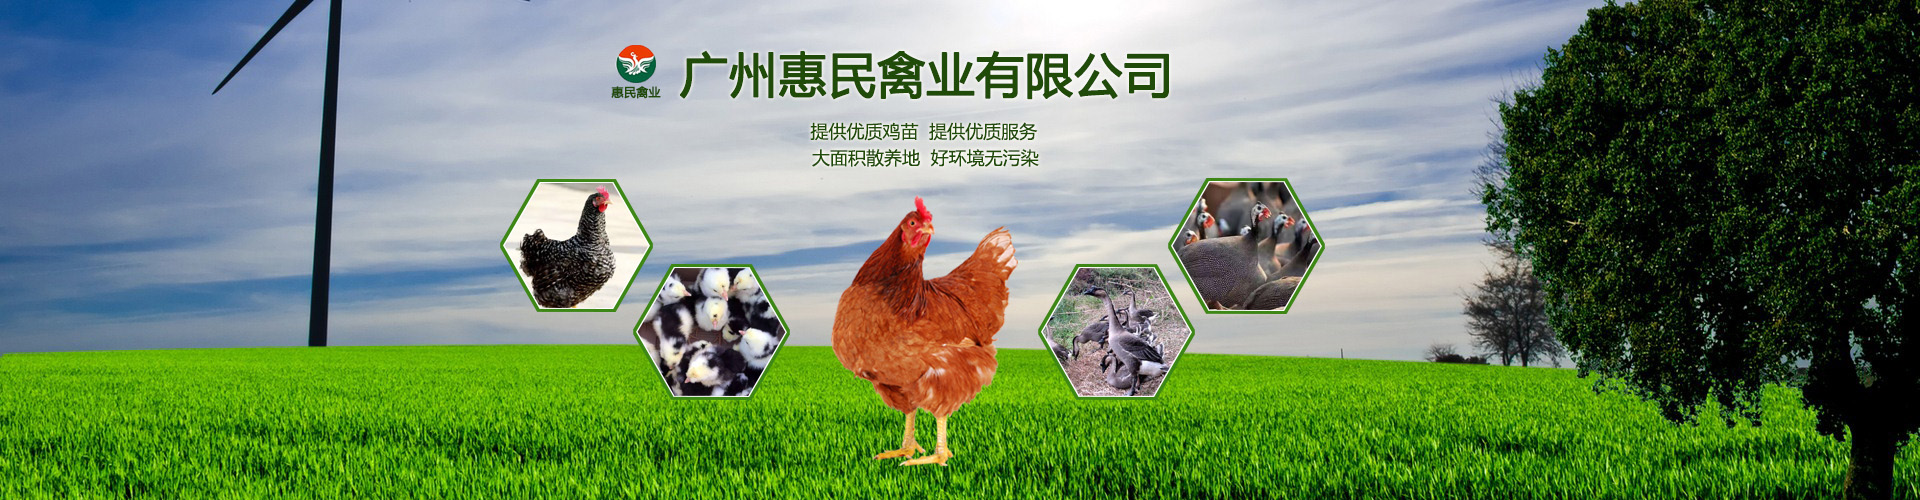 广州惠民禽业有限公司